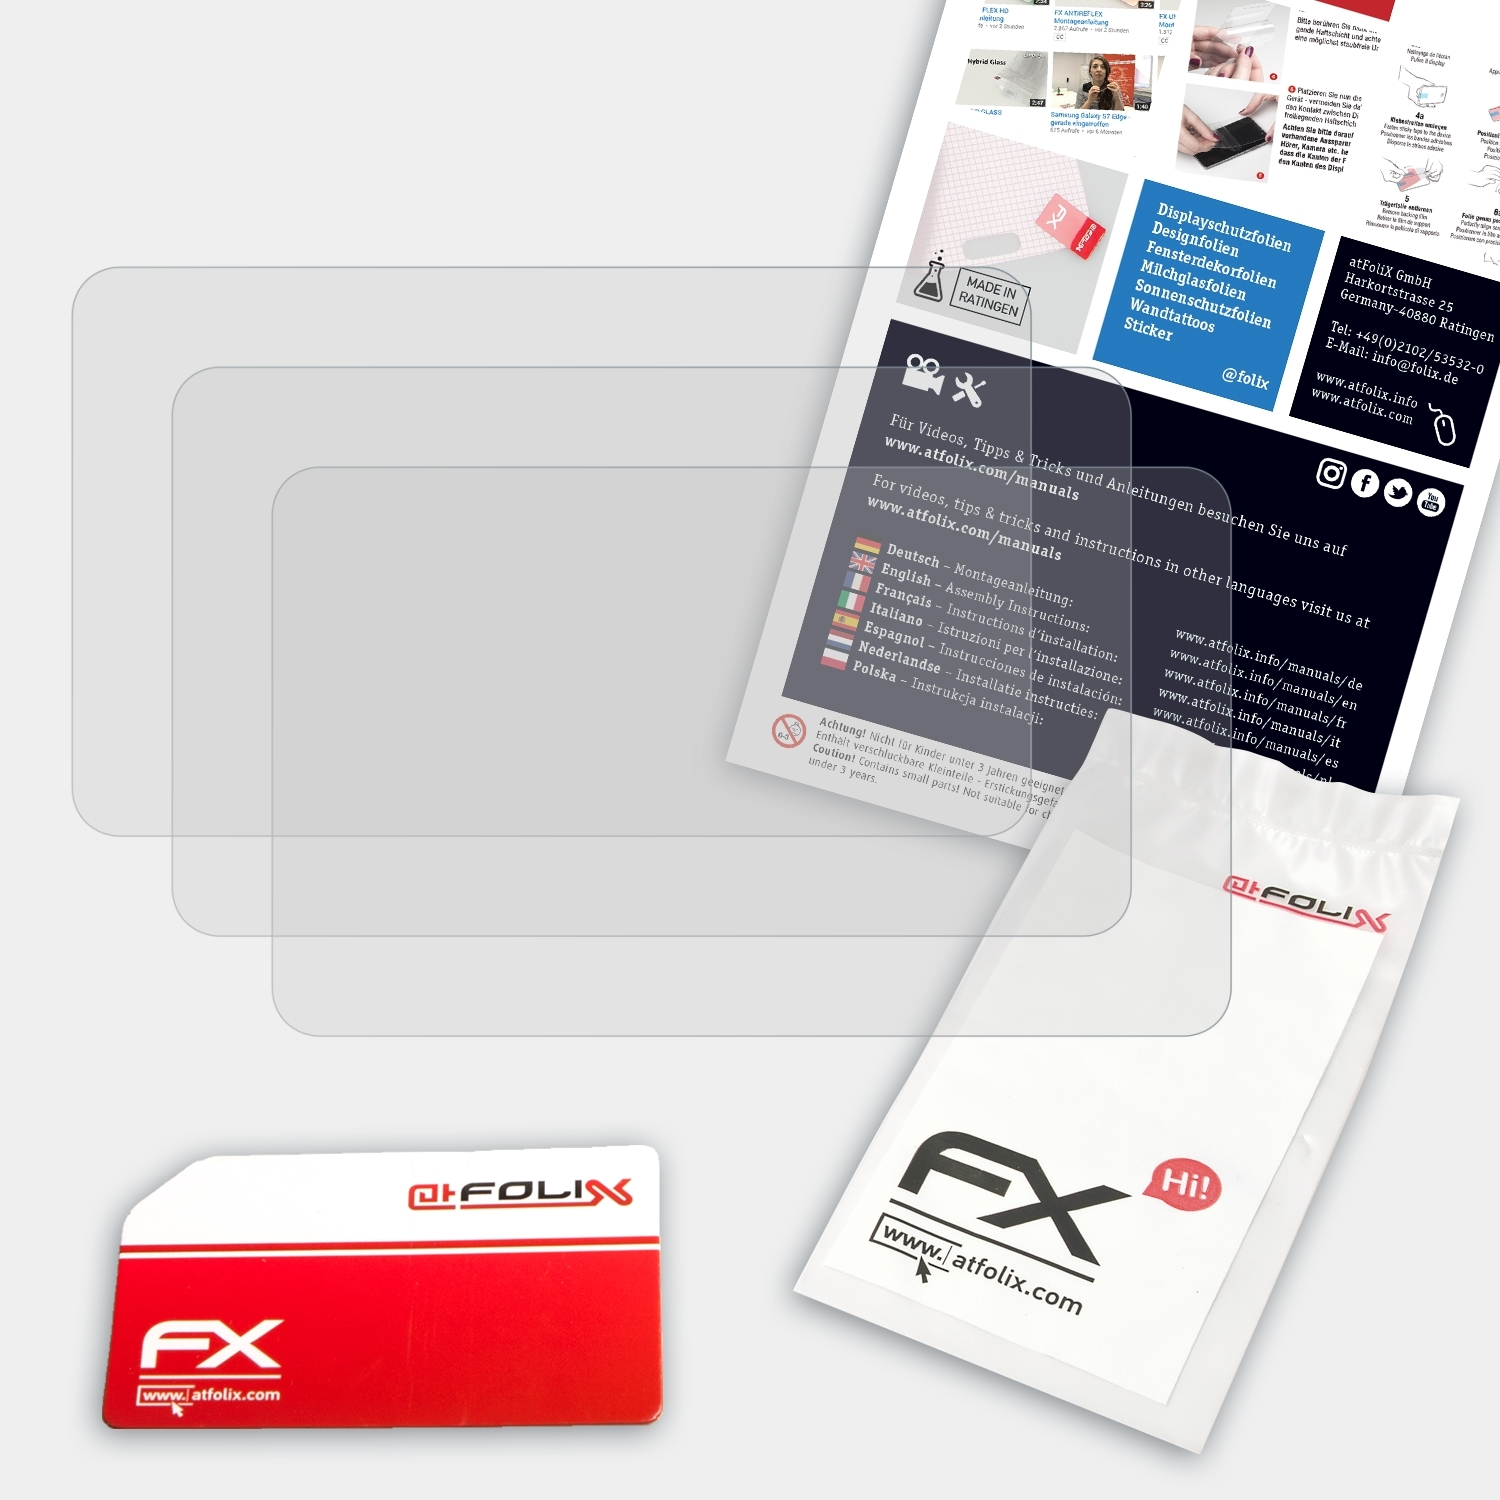 ATFOLIX Displayschutz(für Snooper Ventura FX-Antireflex Pro S6810) 3x